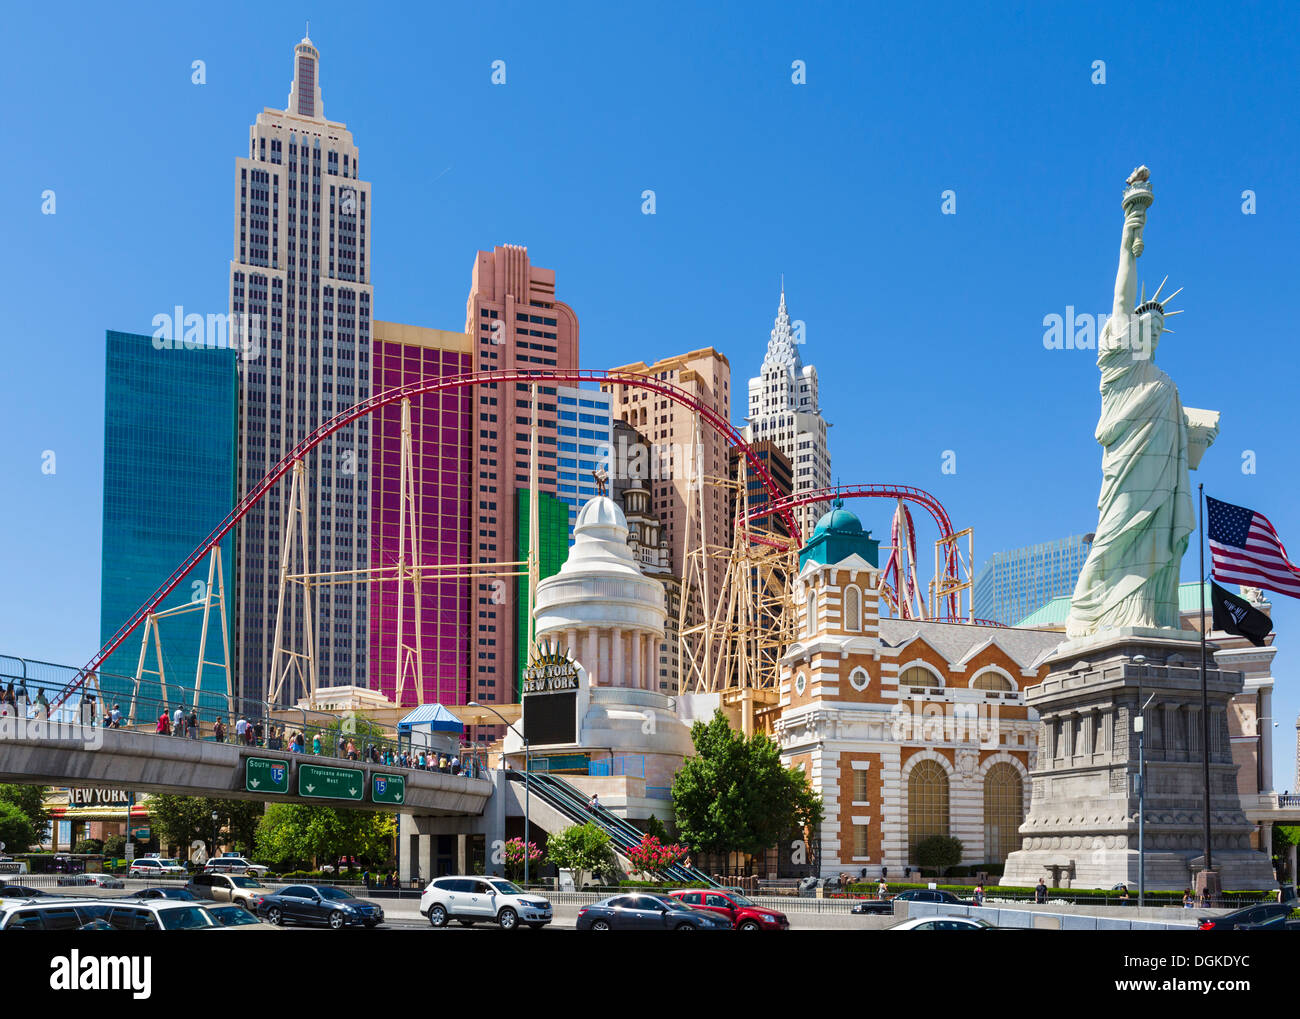 New York-New York hotel and casino, Las Vegas Boulevard South (The Strip), Las Vegas, Nevada, USA Stock Photo